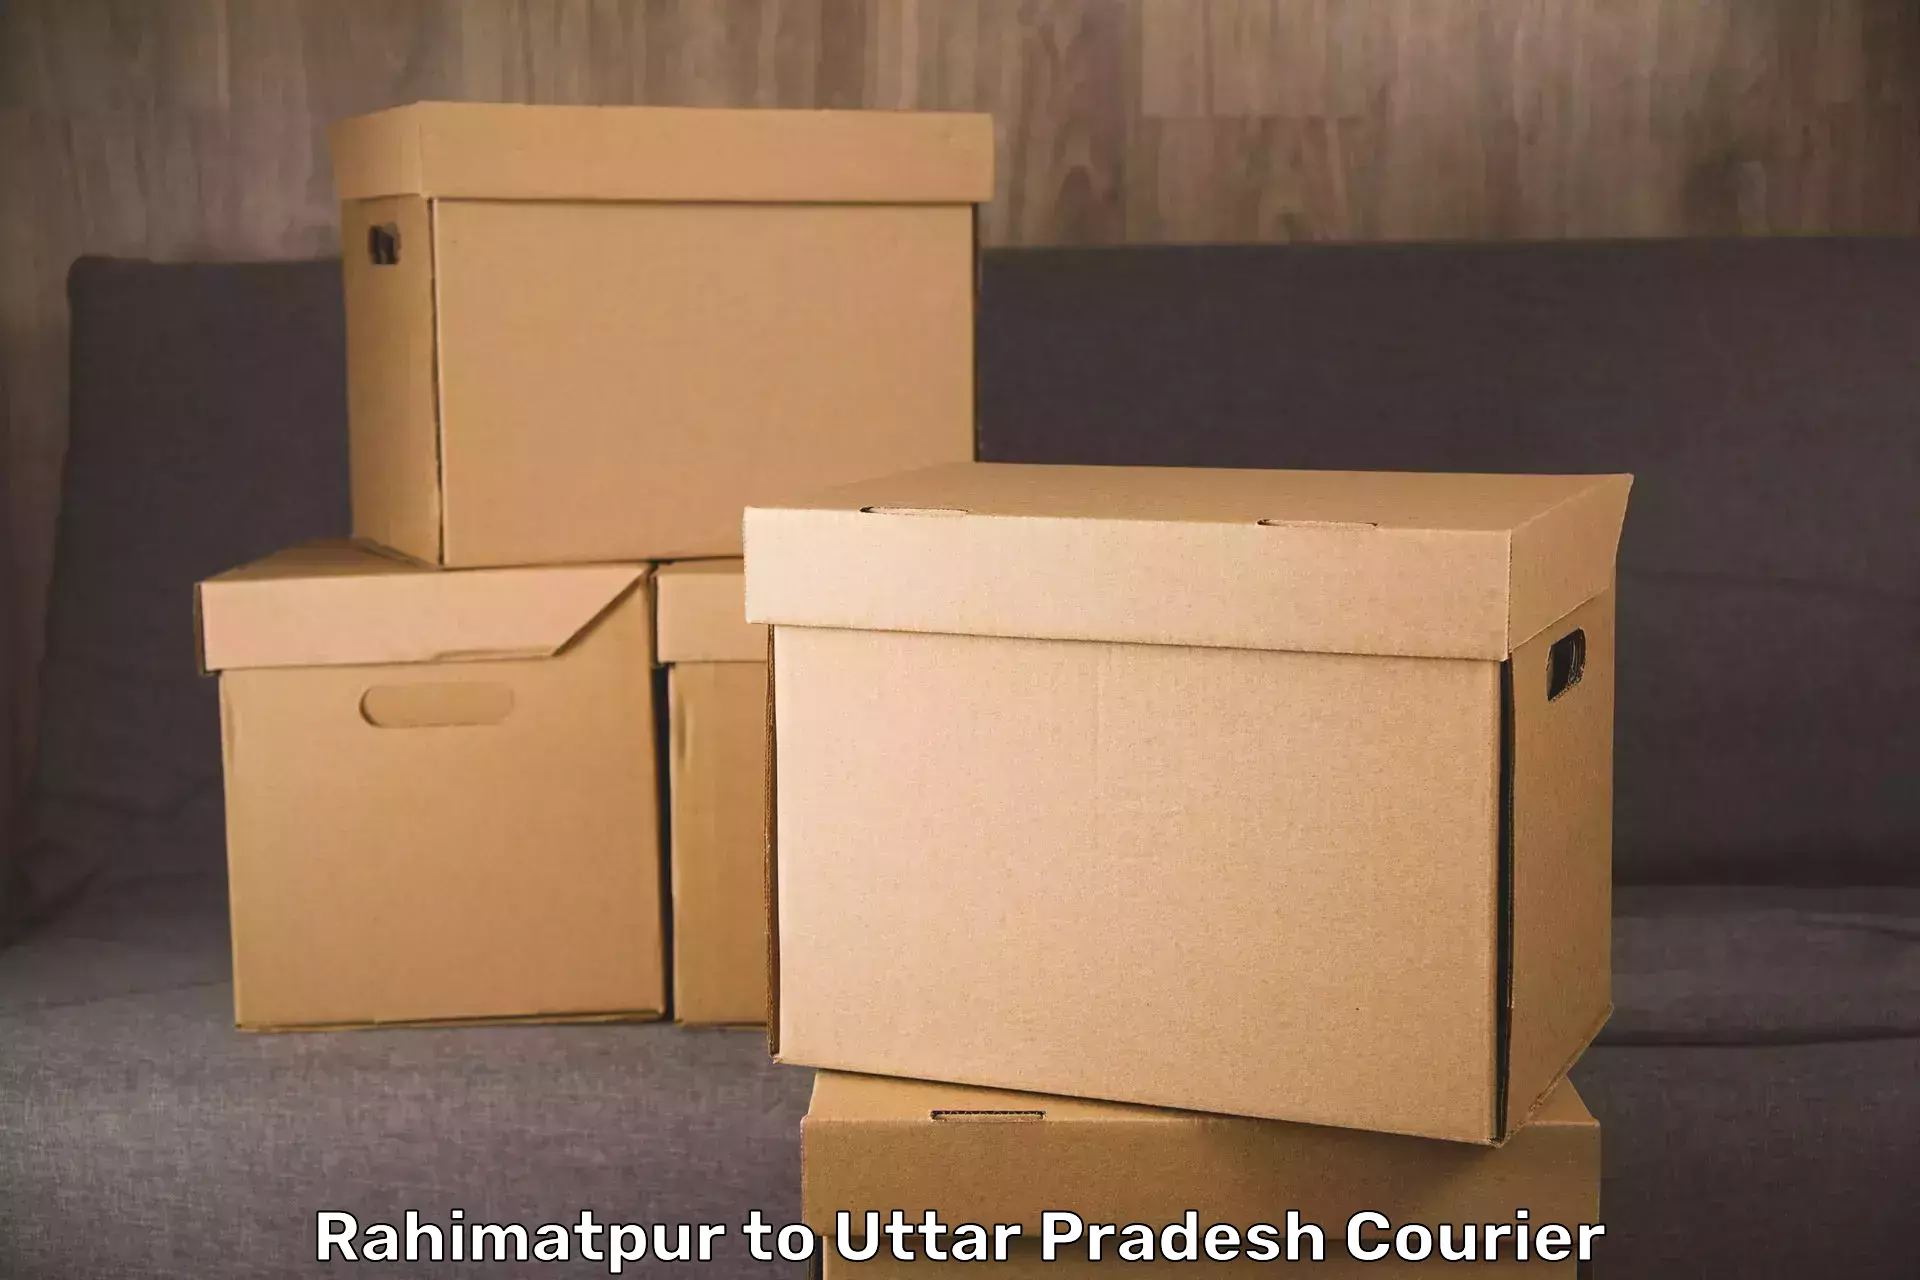 High-quality baggage shipment Rahimatpur to Agra